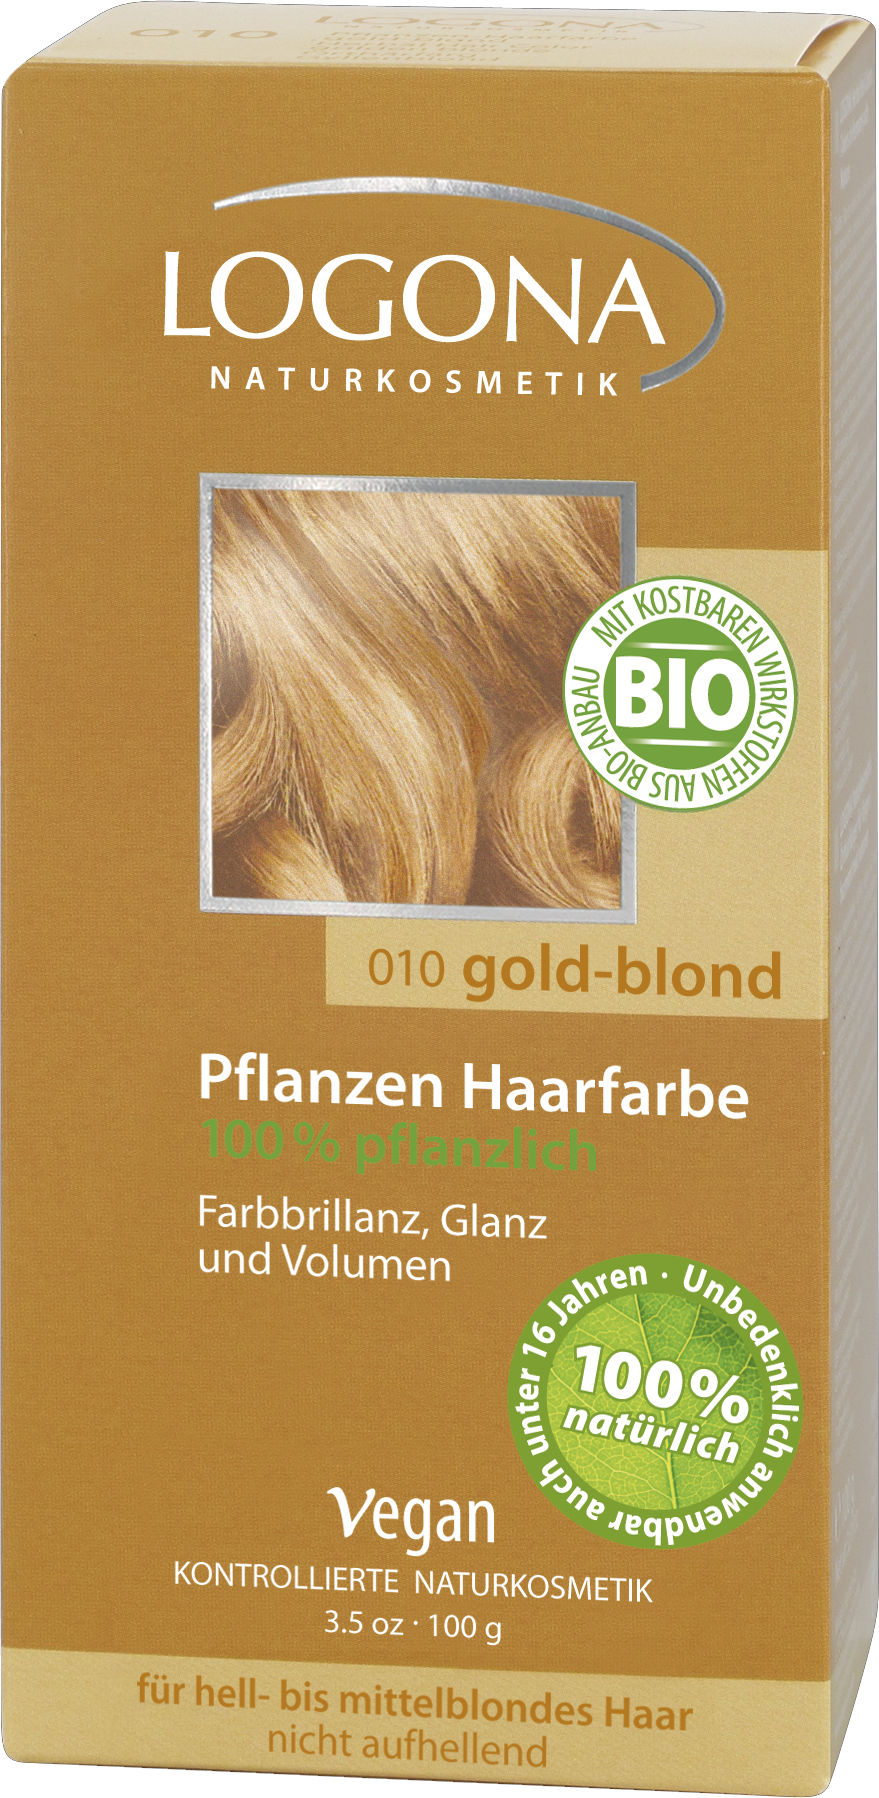 Pflegende Pflanzen-Haarfarbe Pulver Goldblond | Naturkosmetik LOGONA